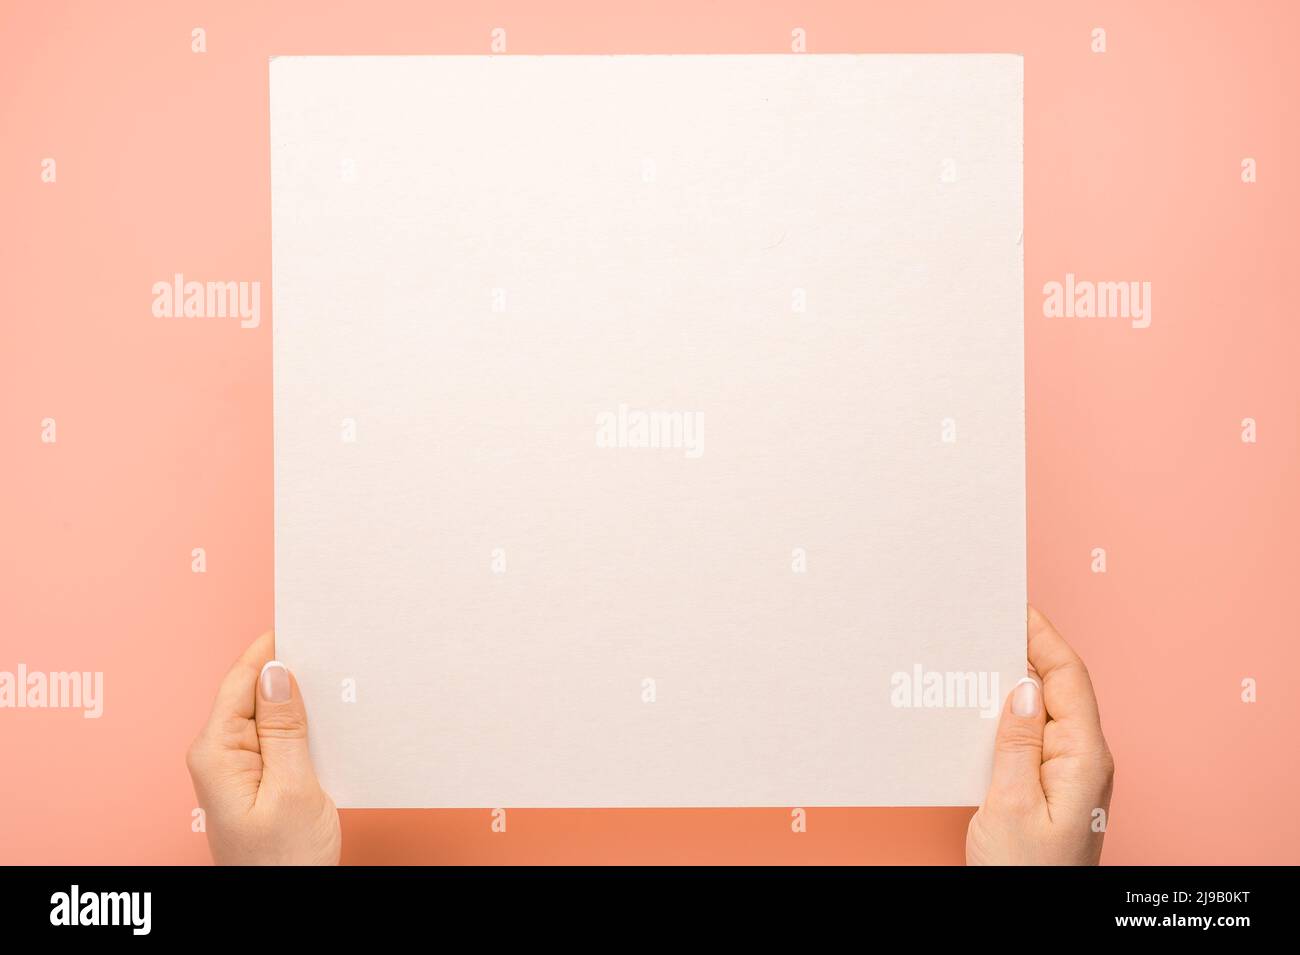 Über dem Kopf gedrehte Aufnahme von Frauenhänden, die ein quadratisches leeres Papierblatt auf einem rosafarbenen Tisch hielten. Frau Hände mit Mockup leeres Papier Blatt auf pastellfarbenem Hintergrund. Hände Hol Stockfoto